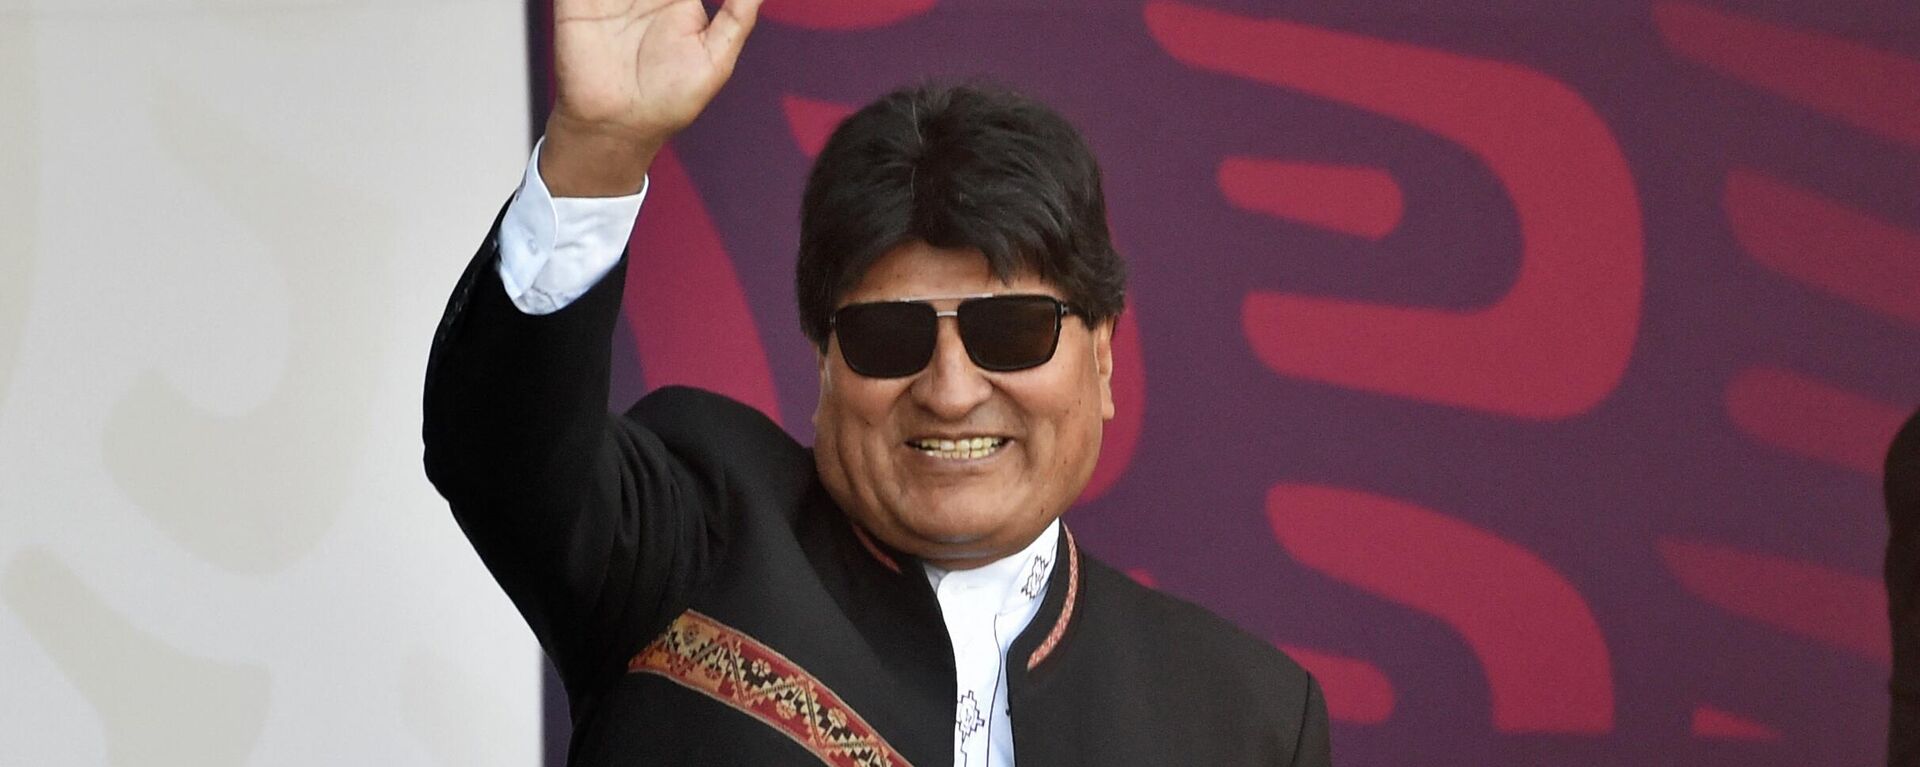 Evo Morales, expresidente de Bolivia, durante un acto conmemorativo por la Independencia de México, en septiembre de 2022 - Sputnik Mundo, 1920, 08.10.2022